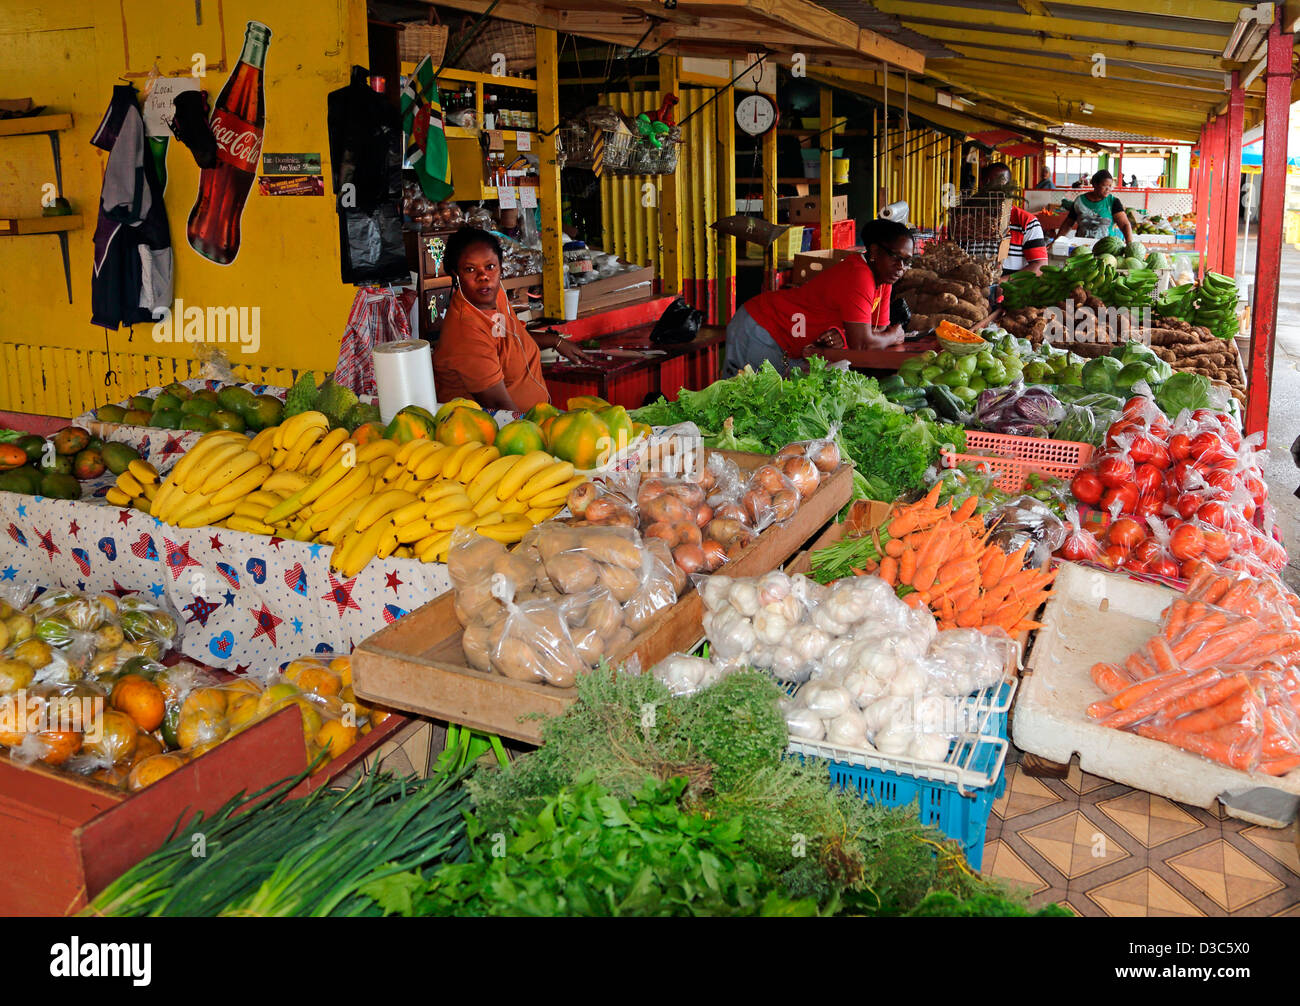 Caraibi mercato di frutta e verdura,DOMINICA Foto Stock